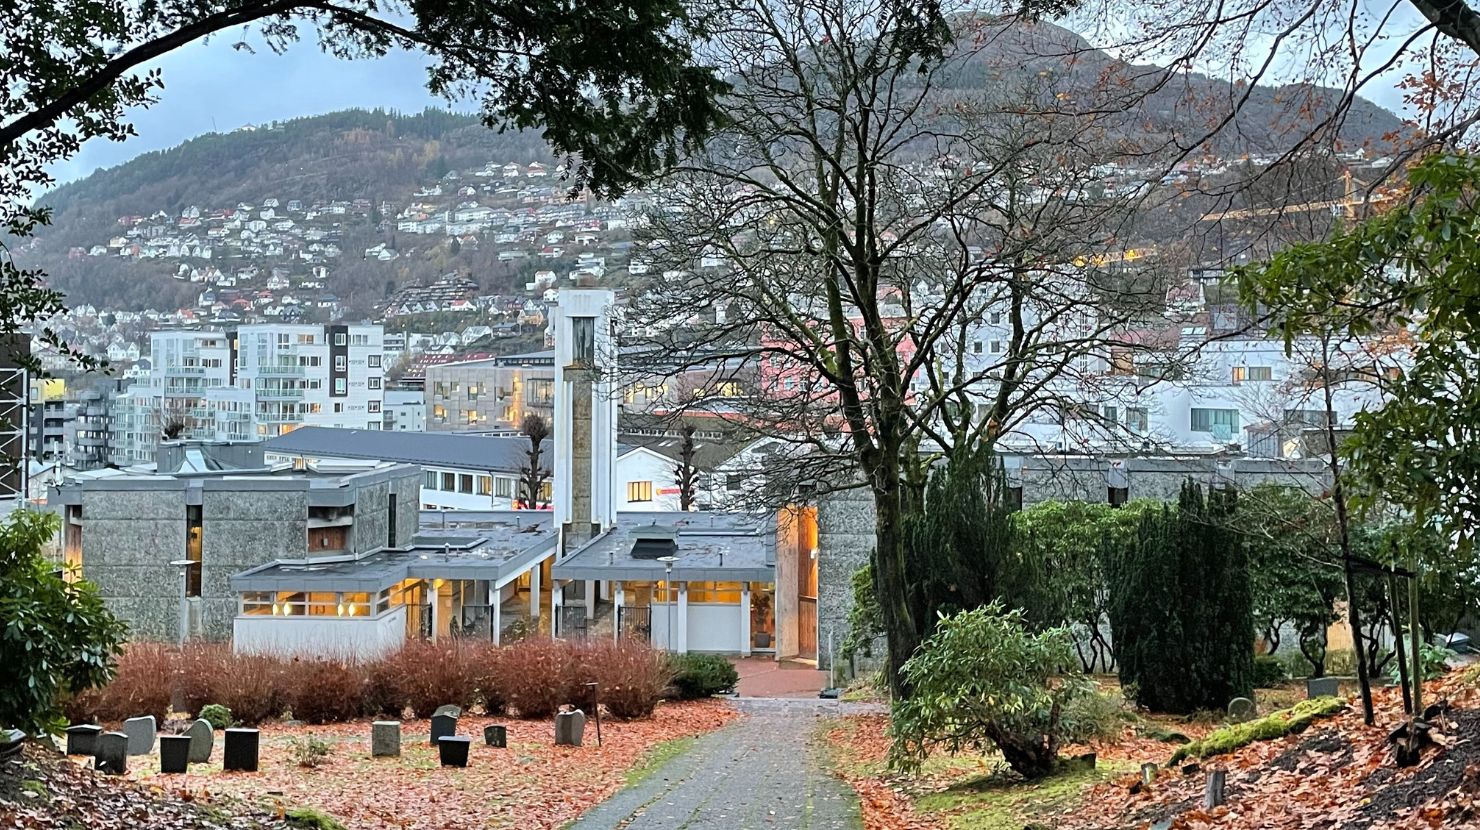 høstbilde av krematorium og kapell med byen i bakgrunnen. Foto.